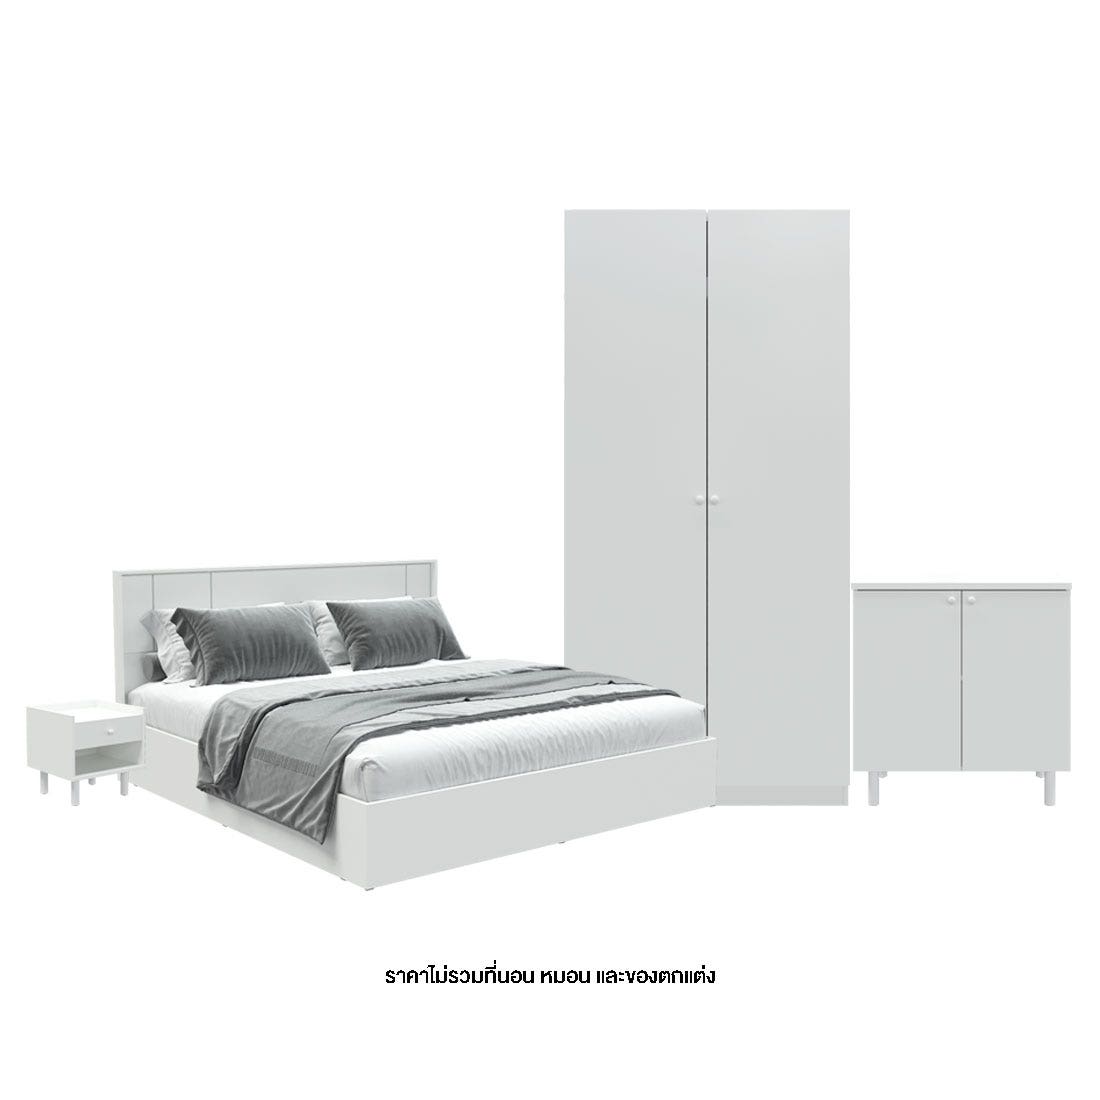 ชุดห้องนอน 5 ฟุต รุ่น Pearliz & ตู้เตี้ย & ตู้ข้างเตียง สีขาว01